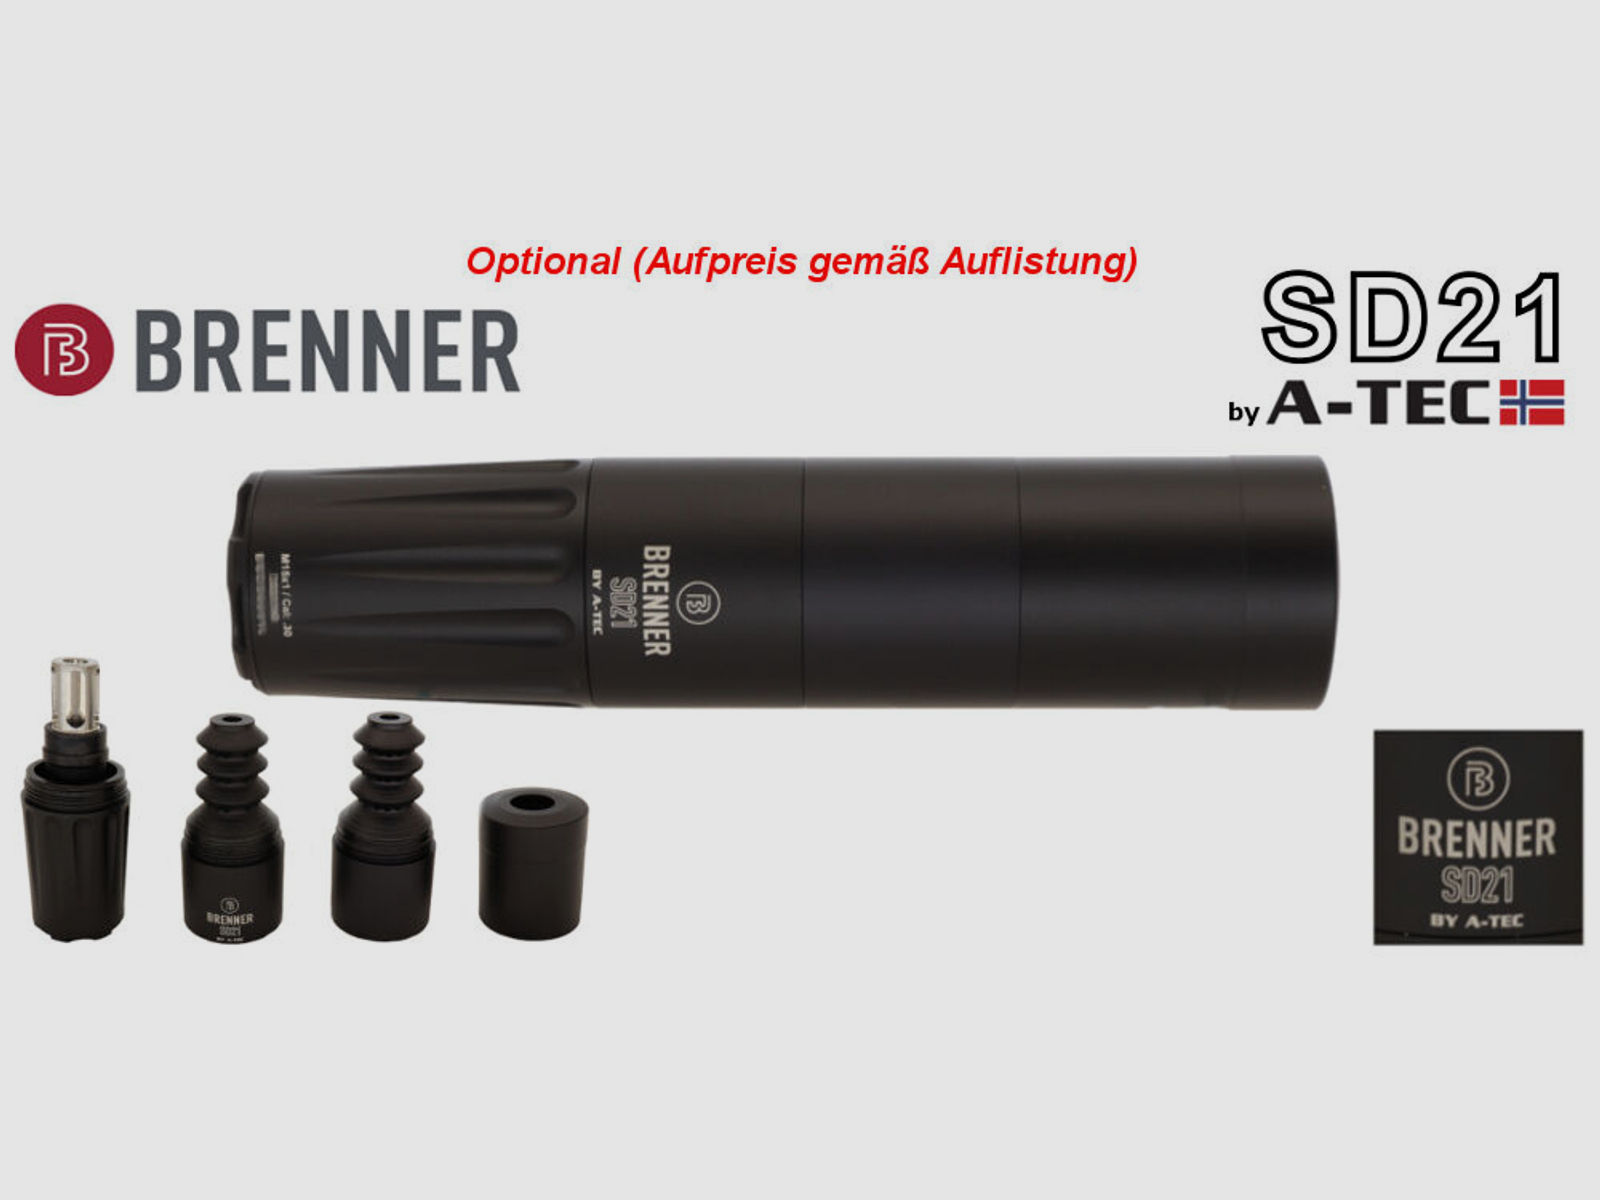 Bergara	 B14 B&H Prohunter Flex LINKS Lochschaft Bushnell 2,5-15x50 fertig montiert / Optional: Brenner Schalldämpfer